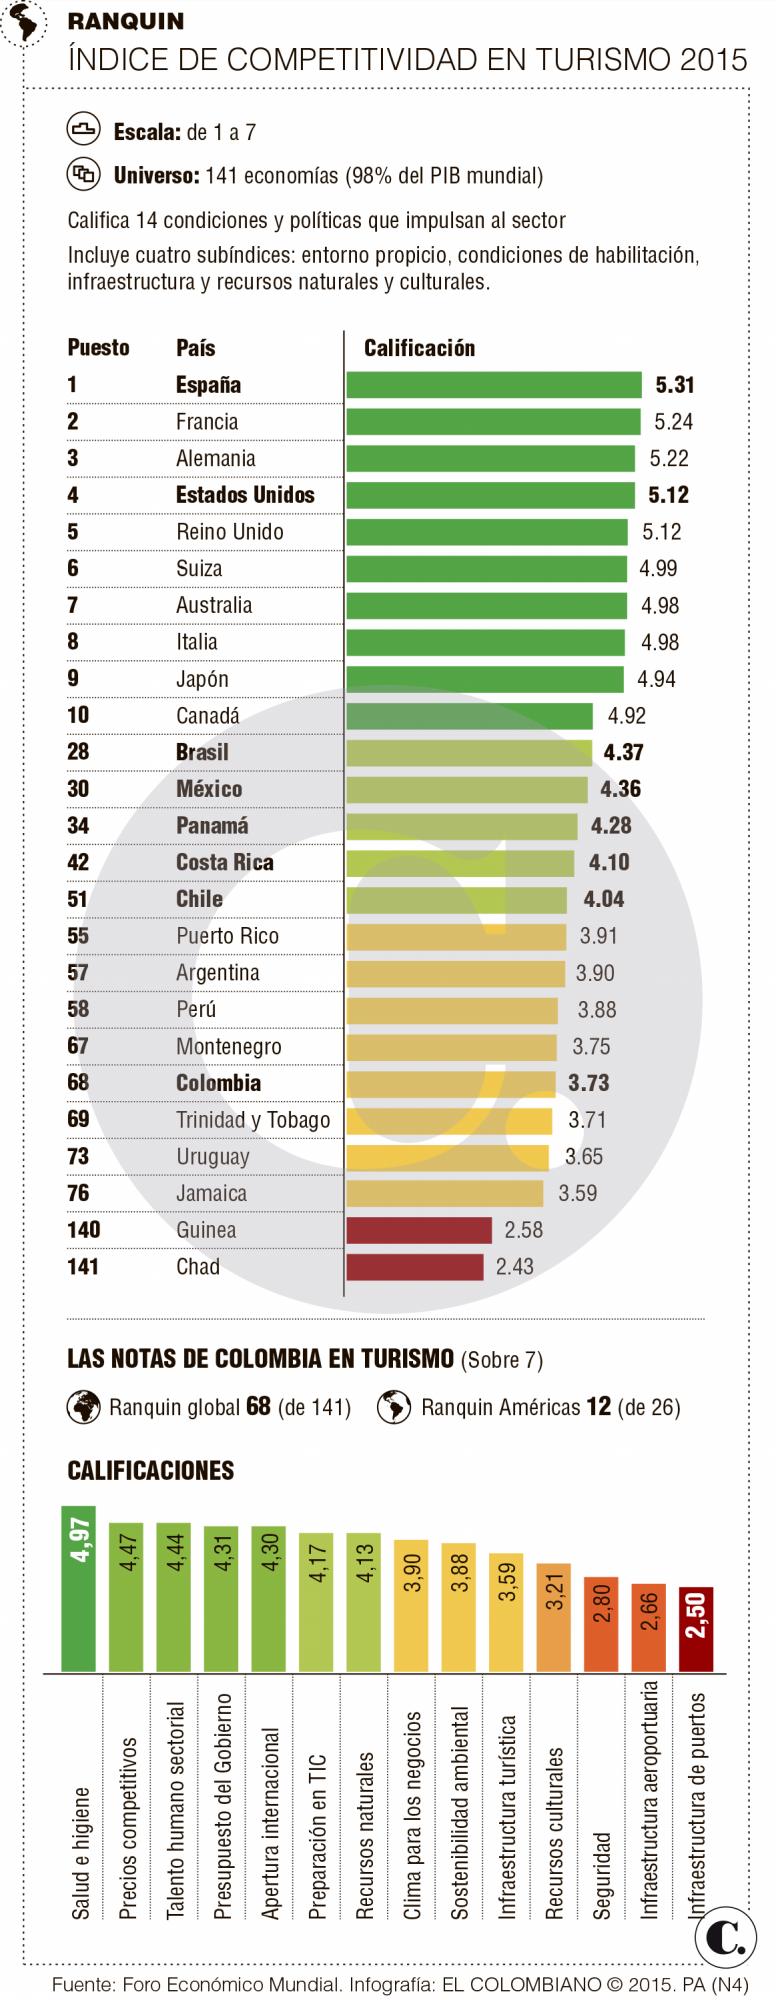 En competitividad turística, Colombia es 68 entre 141 países